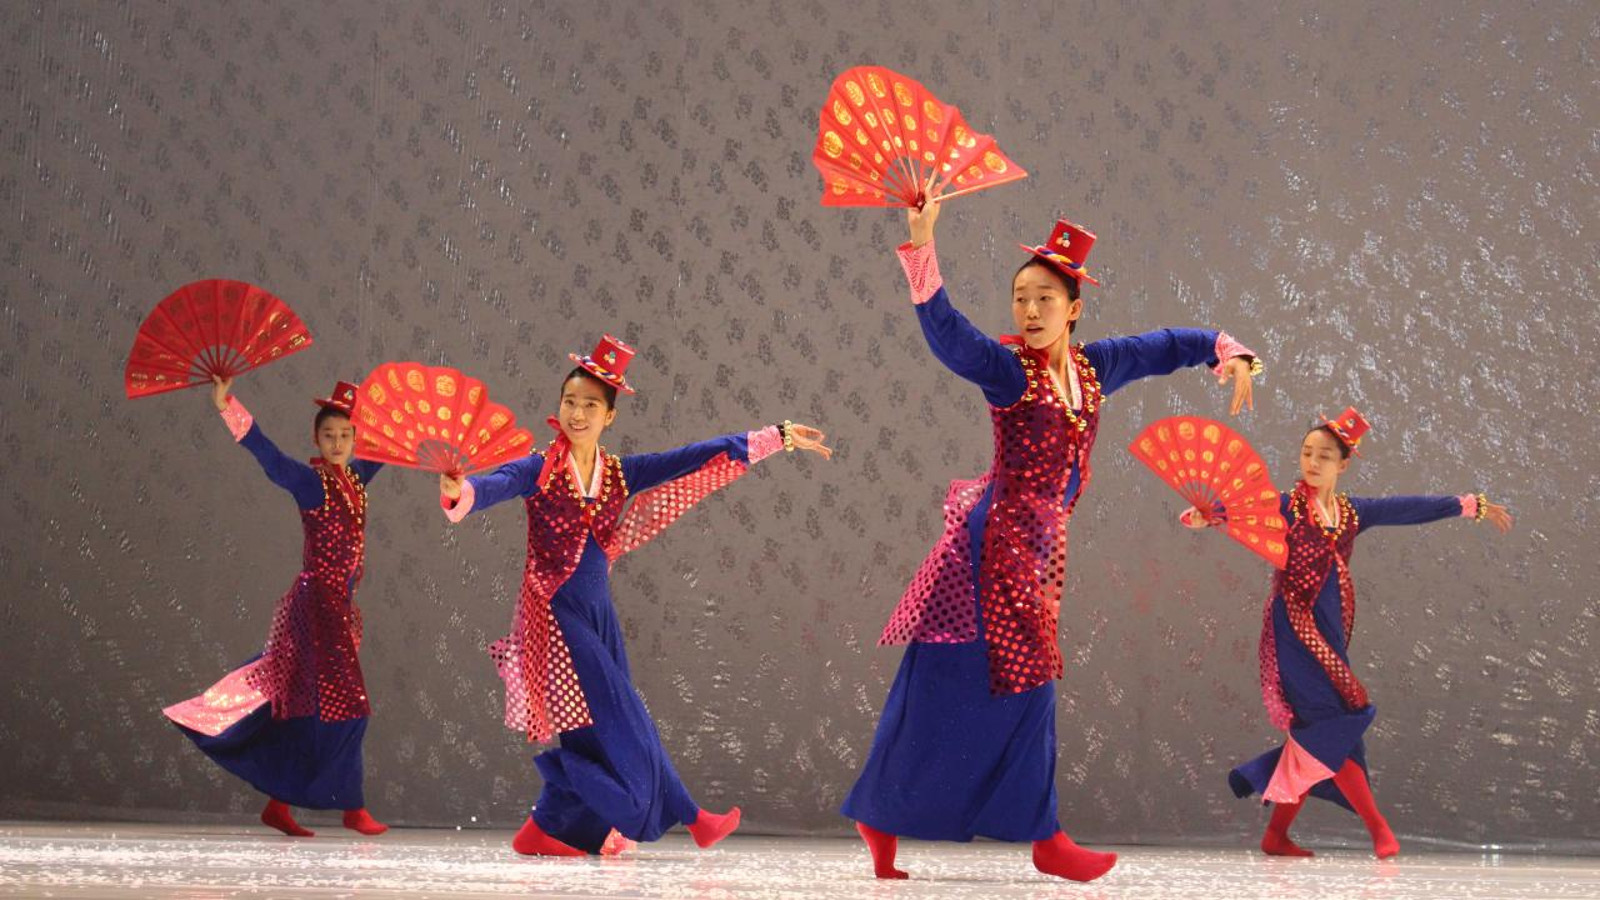 Kuvassa on tanssijoita traditionaalisiin pitkiin koristeltuihin pukuihin ja viuhkat kädessään. Värit ovat sinisiä ja punaisia.